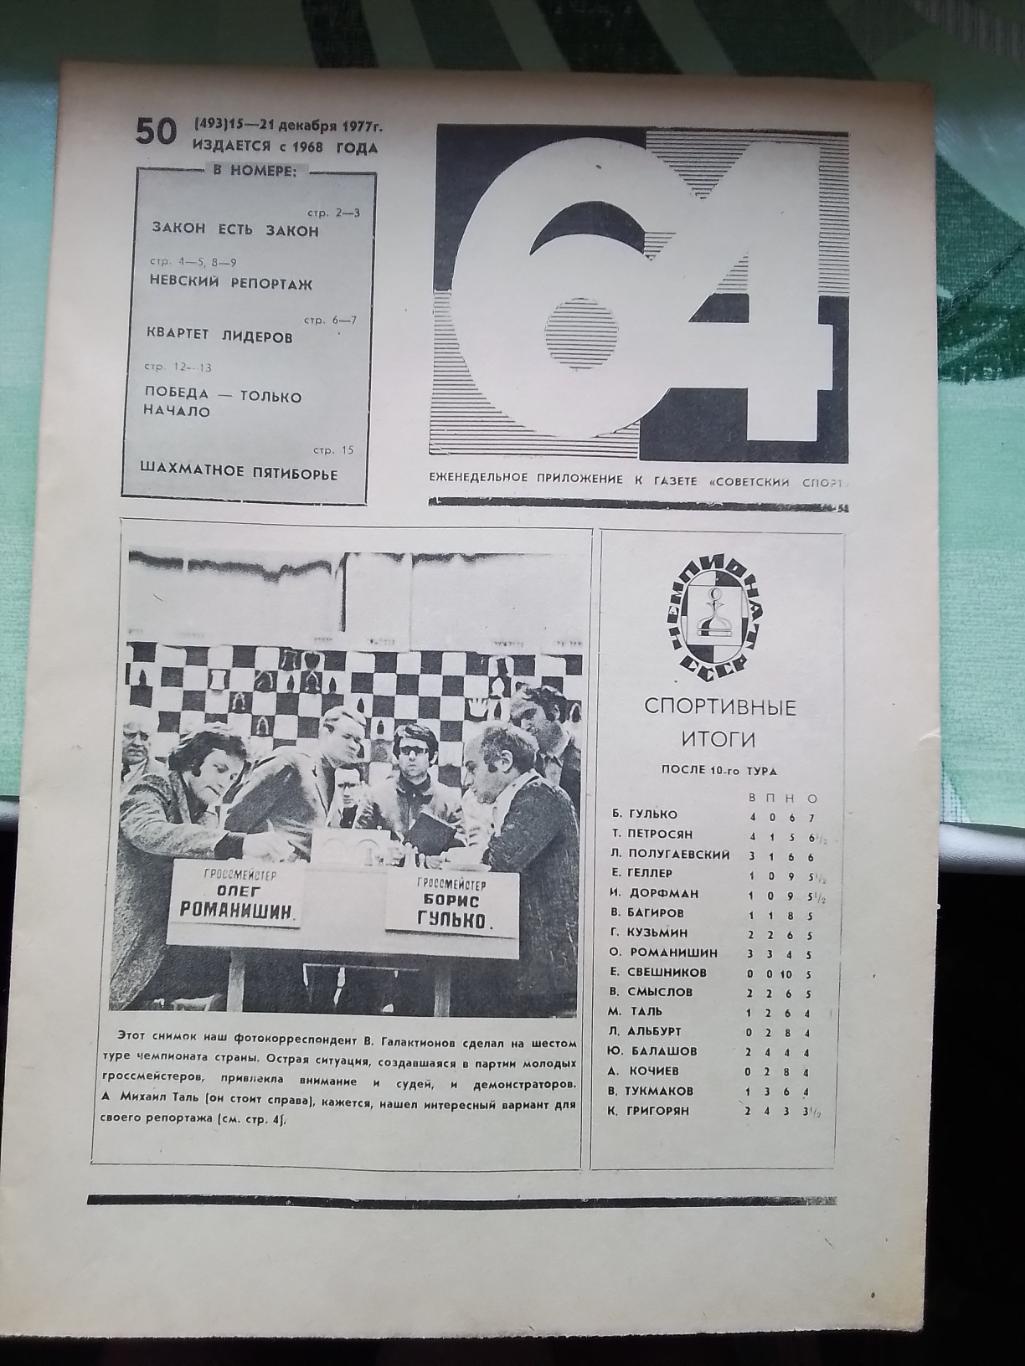 Приложение 64 Шахматы Советский спорт N 50 (493) 15-21.12. 1977